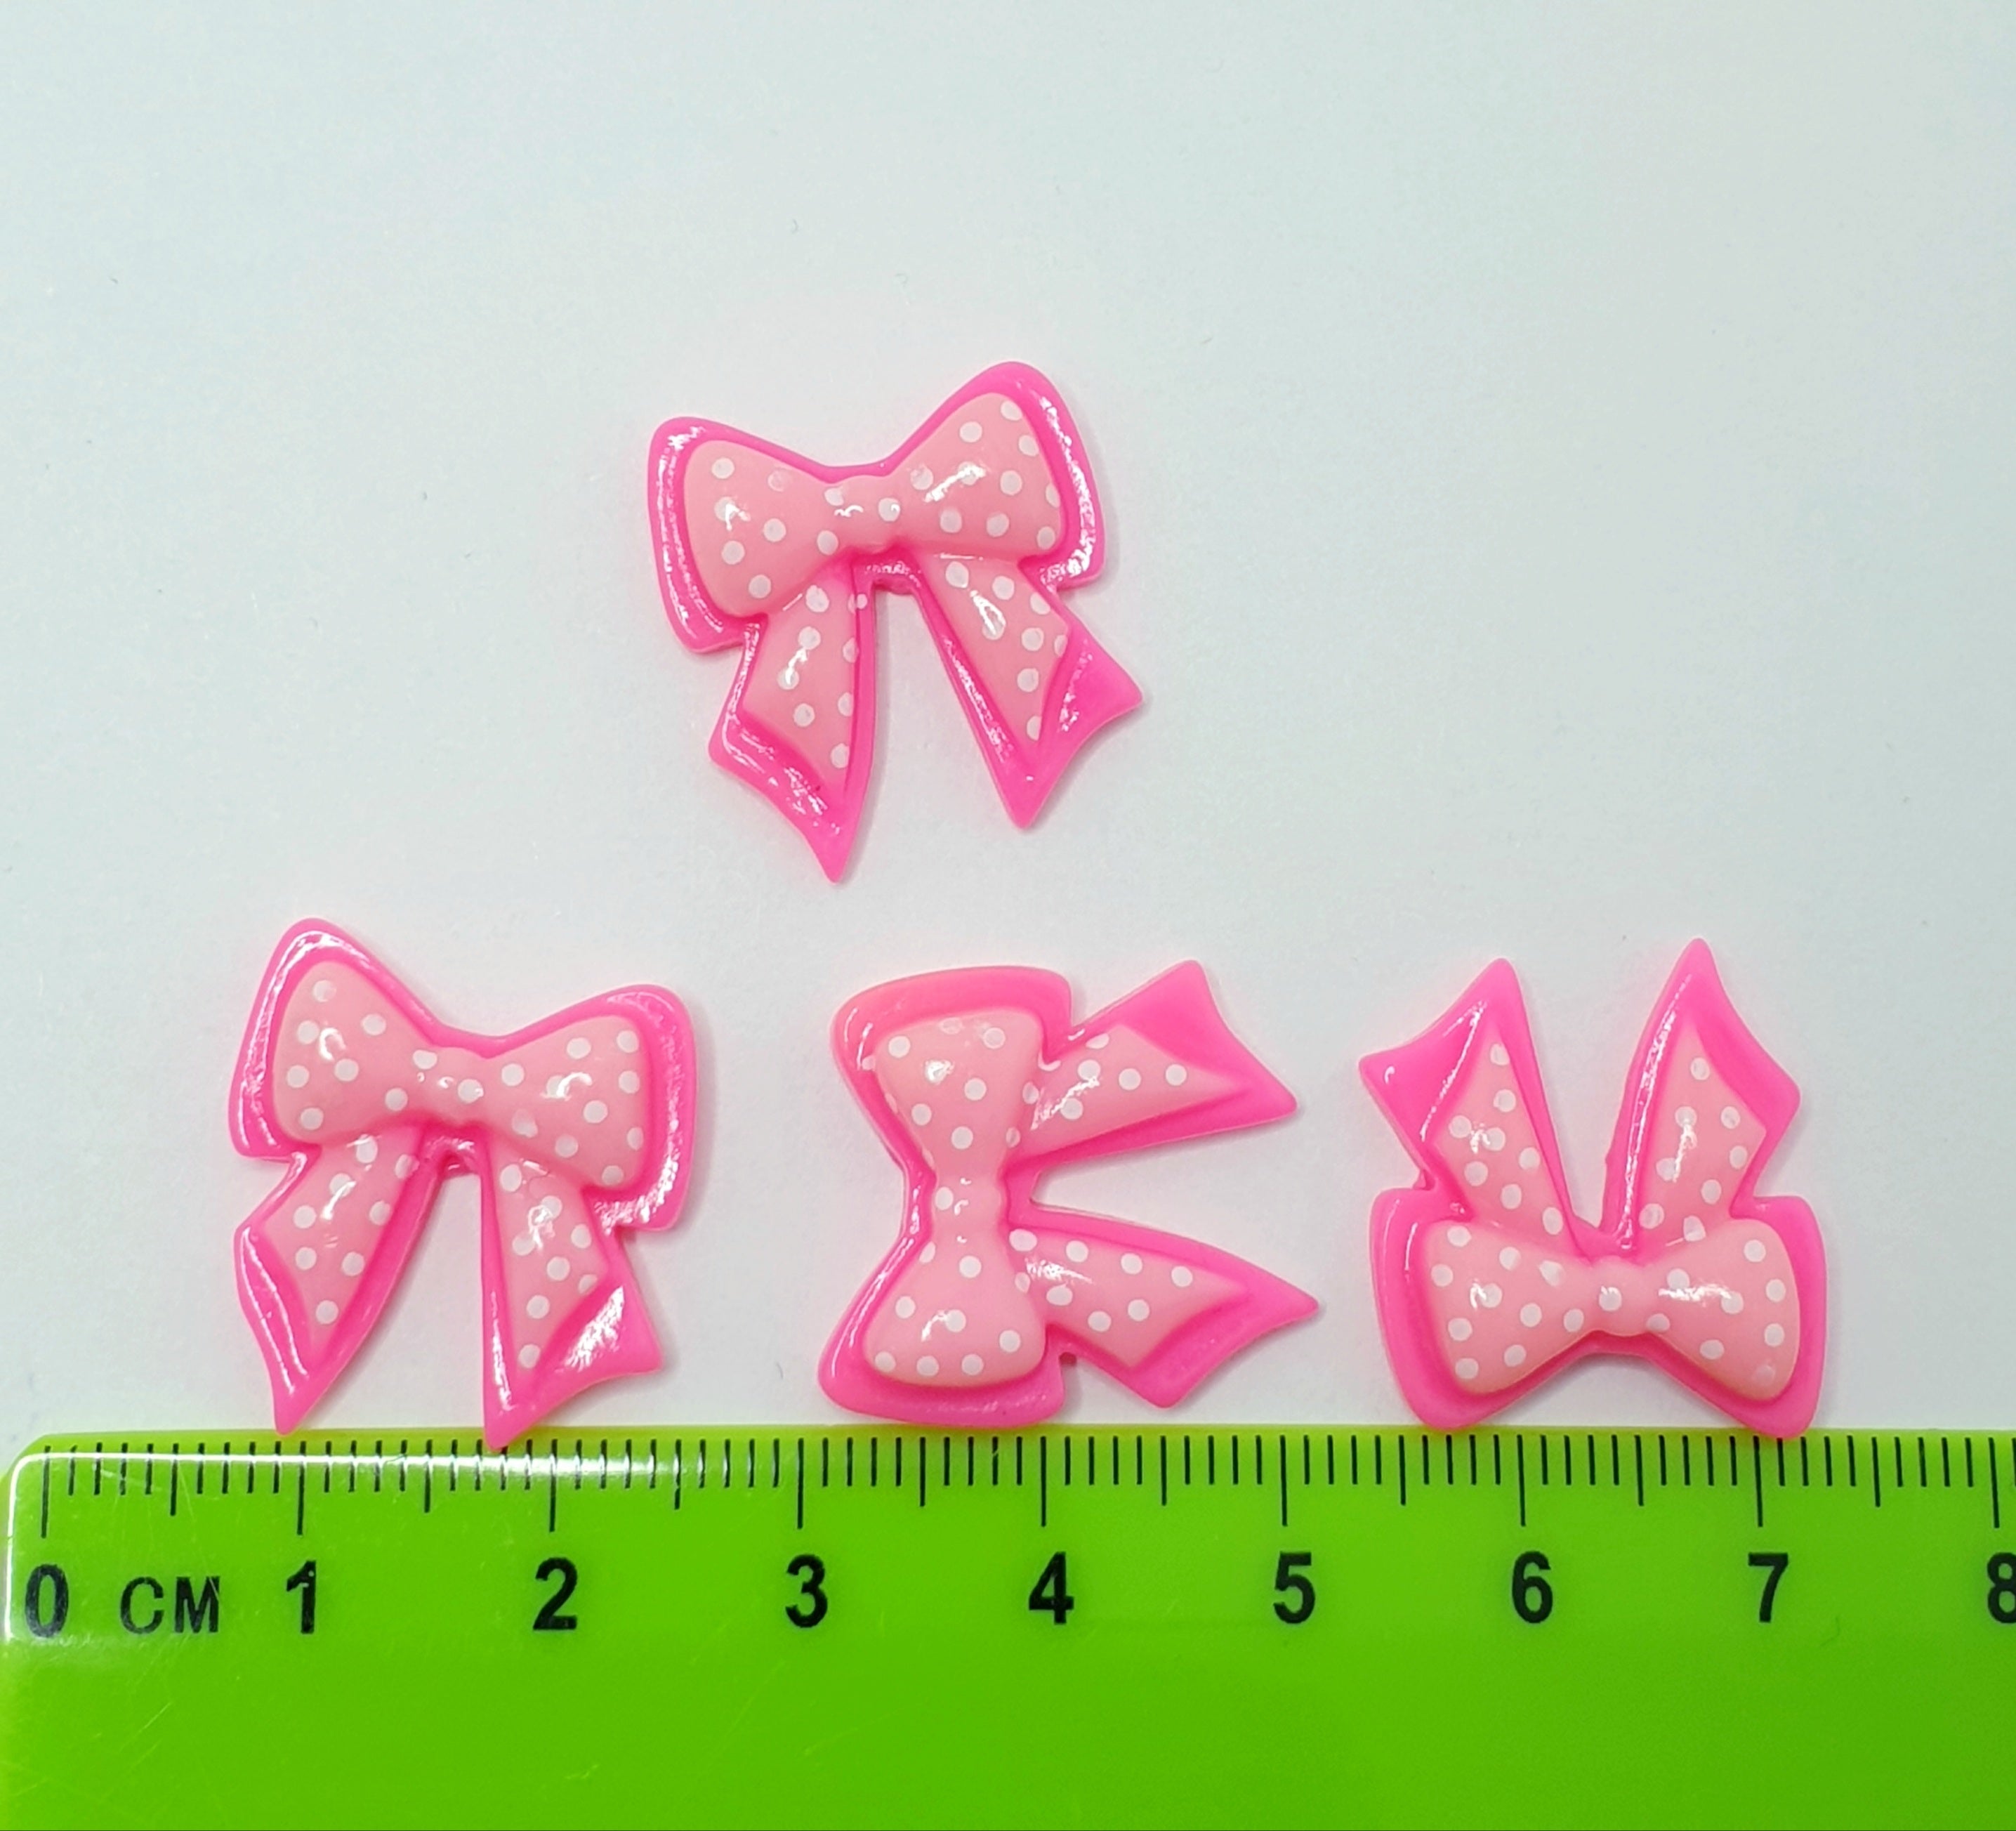 MajorCrafts 10pcs 20mm Pink & White Polka Dot Flat Back Resin Kawaii Bows